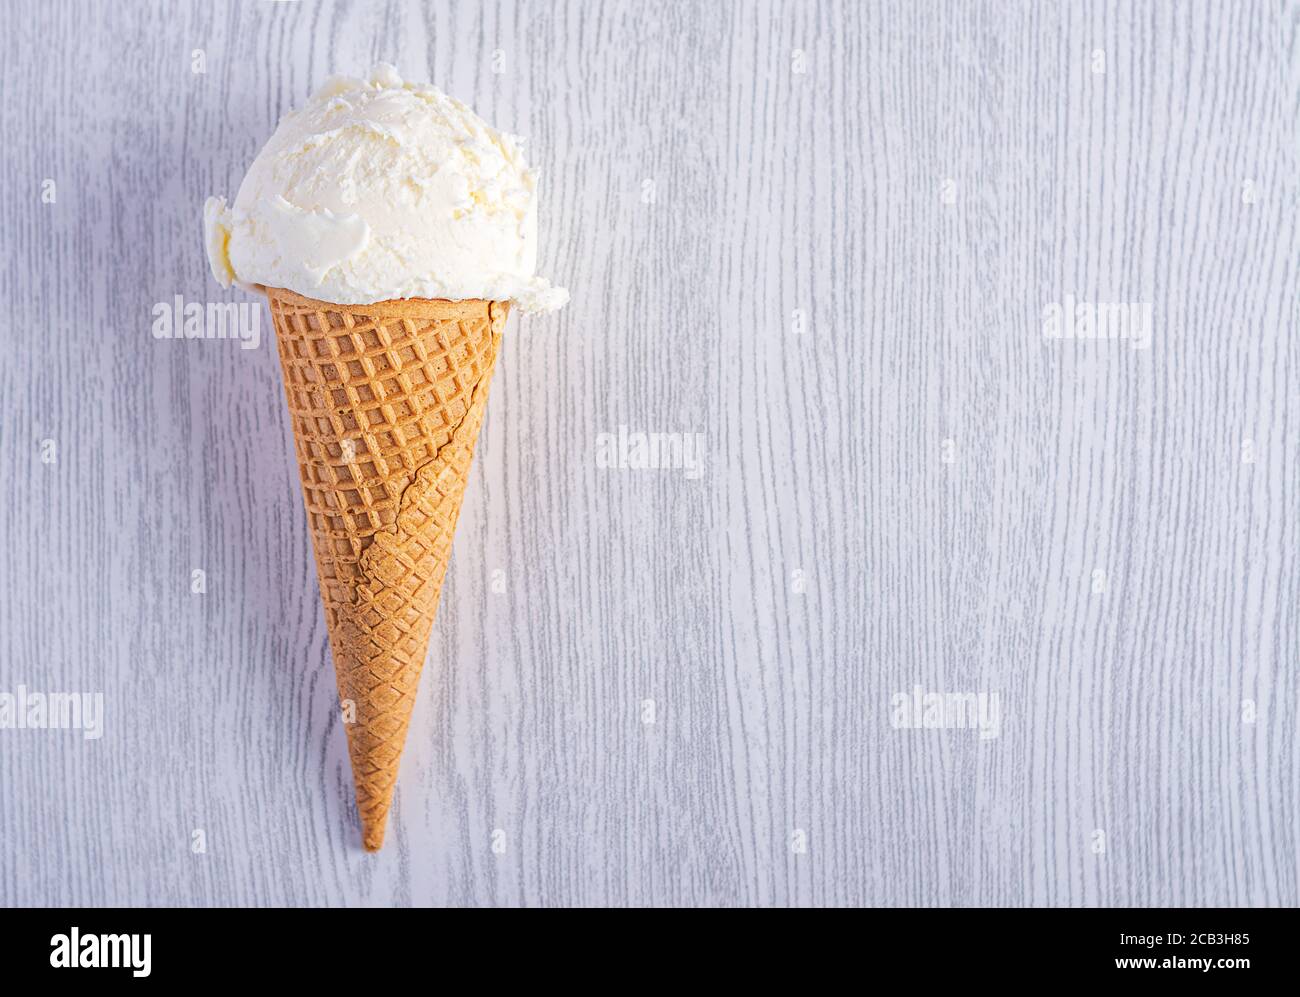 Cône de crème glacée sur fond de bois blanc. Un cône de glace de type cachets. Heure d'été Banque D'Images